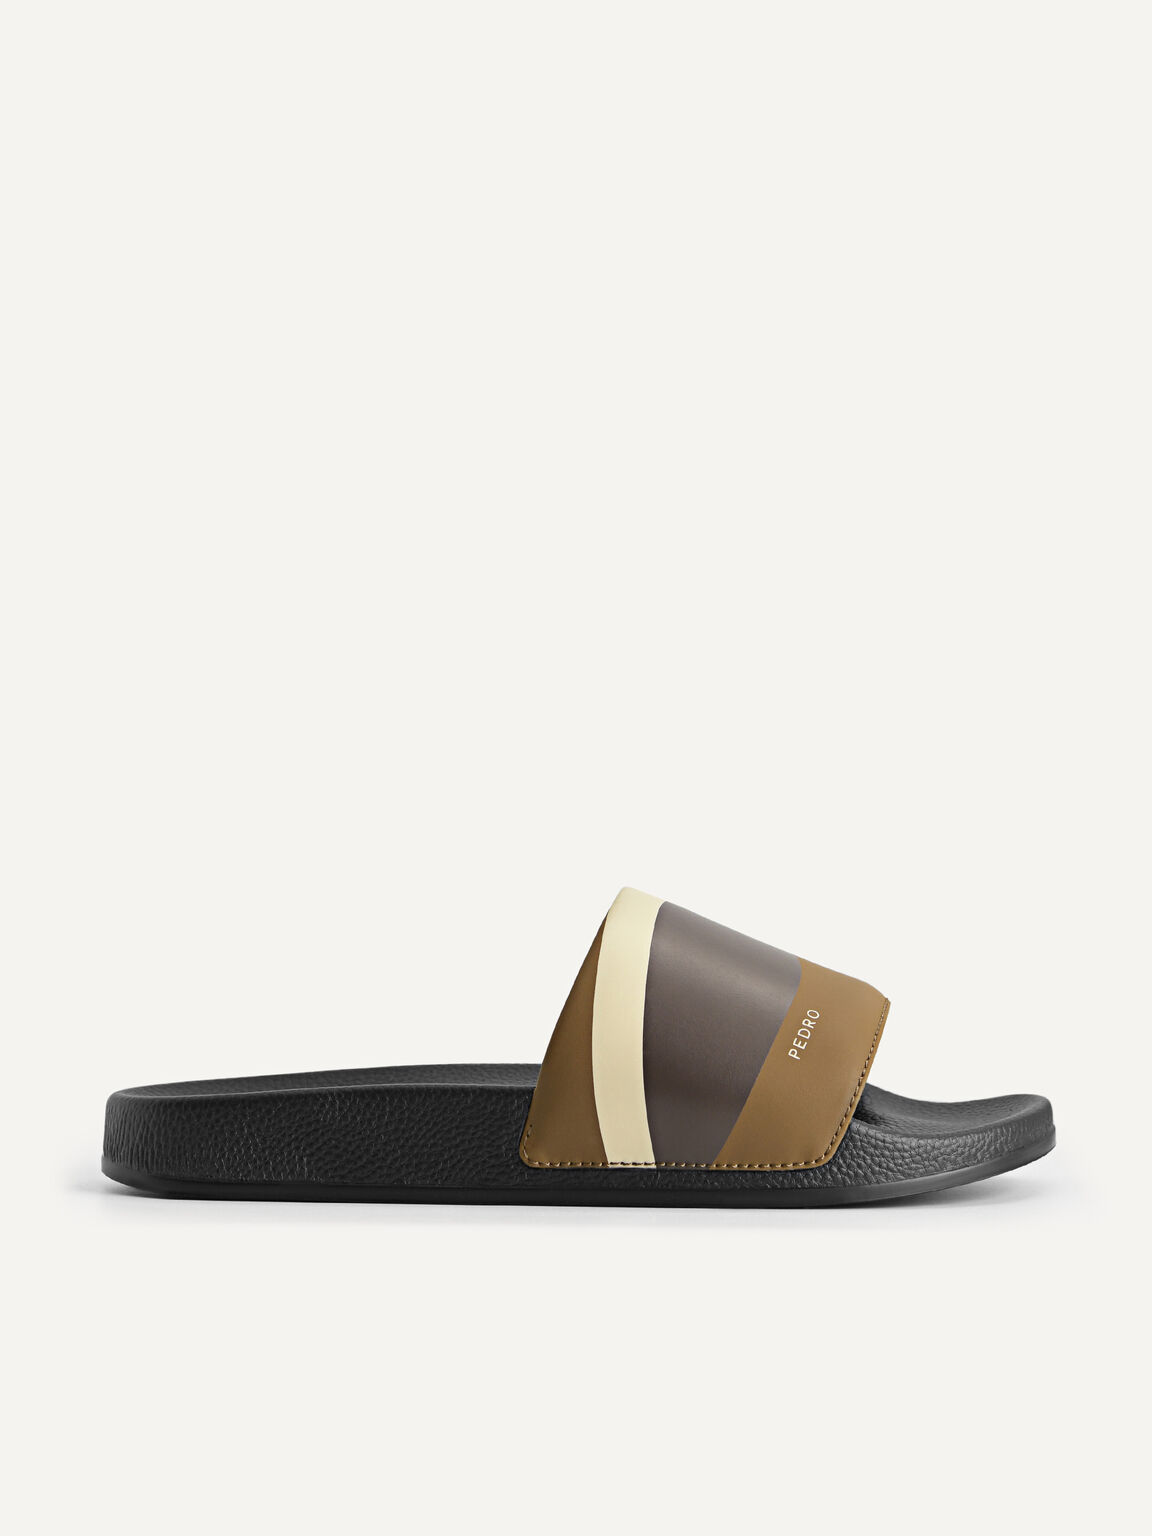 Printed Slide Sandals, Olive